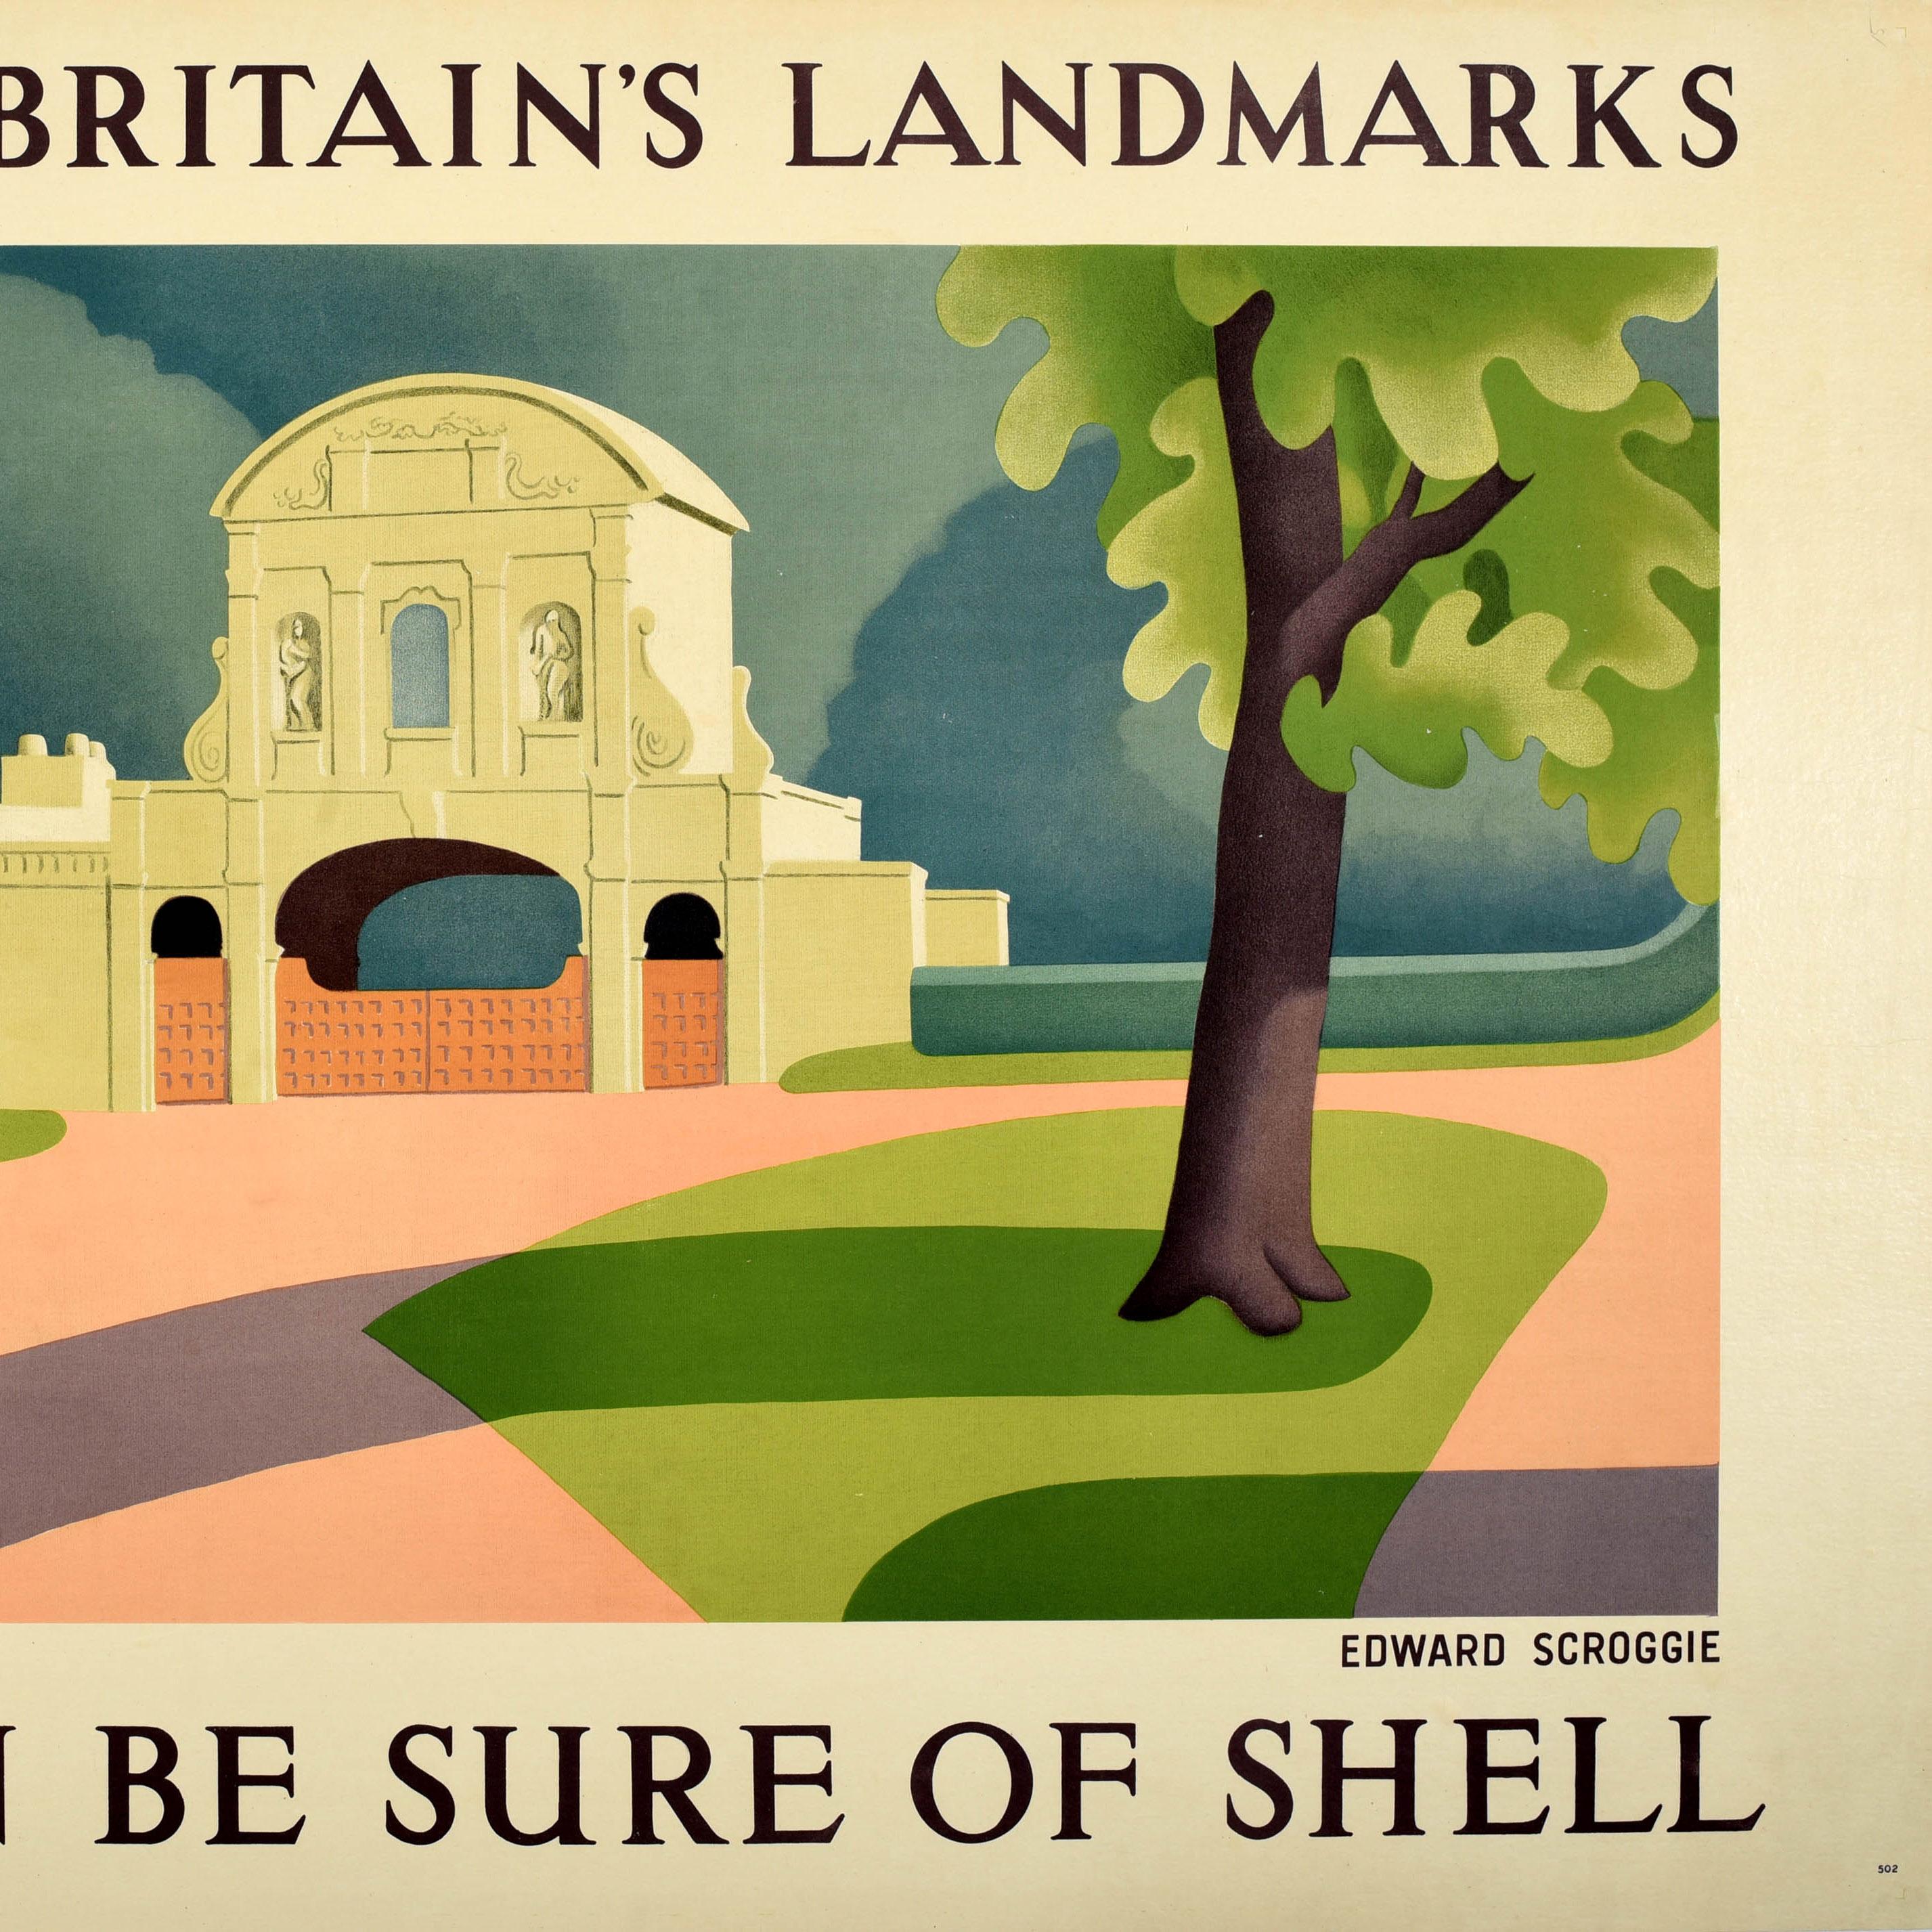 Original-Reisewerbeplakat von Shell - To Visit Britain's Landmarks You Can Be Sure Of Shell - mit einer Ansicht des historischen Temple Bar Tores des englischen Malers Edward Scroggie (1906-1944), umgeben von grünen Bäumen und Hecken, als es sich im